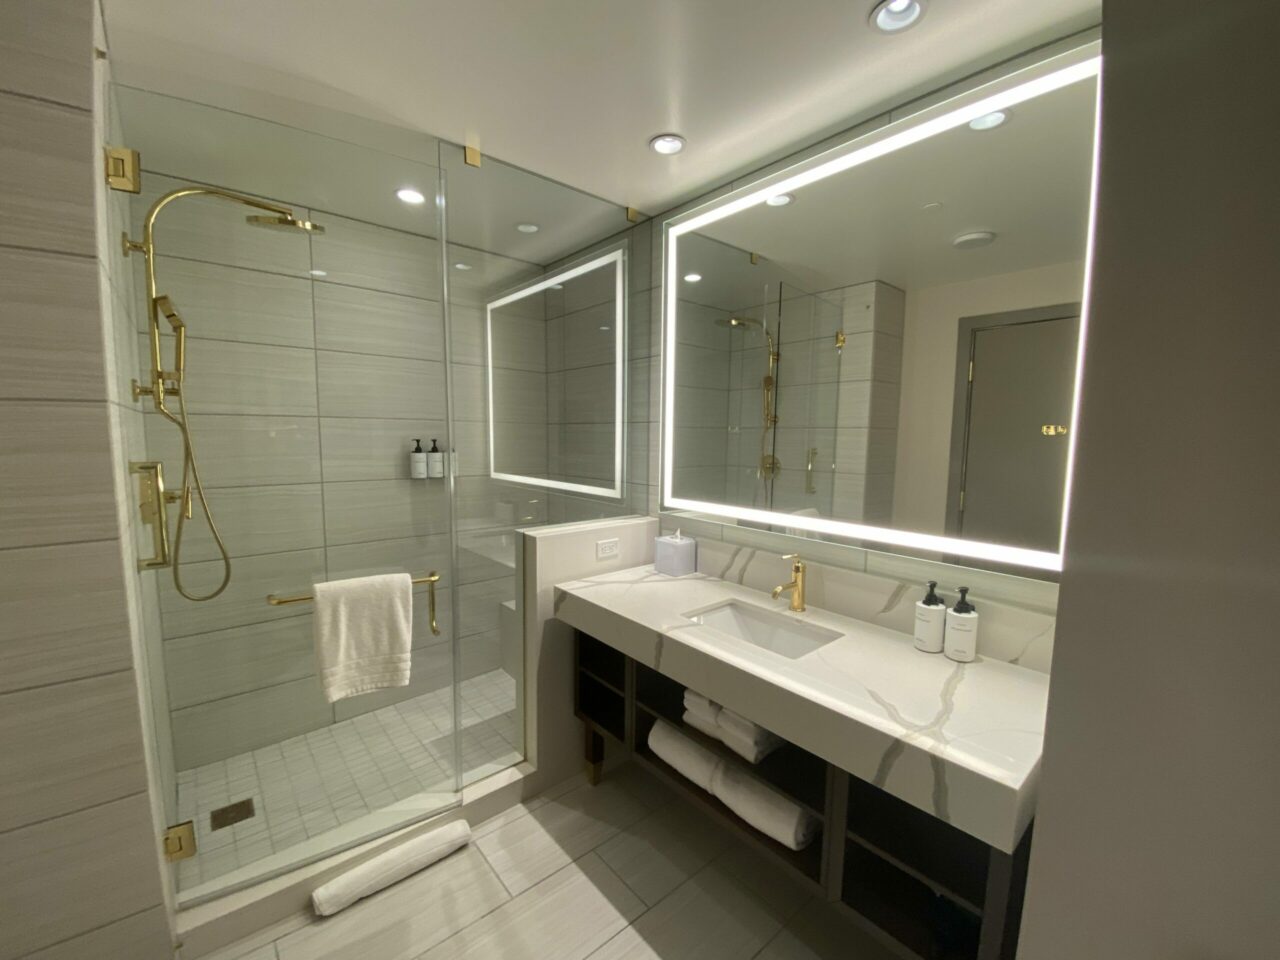 Conrad & Hilton hotels Las Vegas queen room bathroom review 